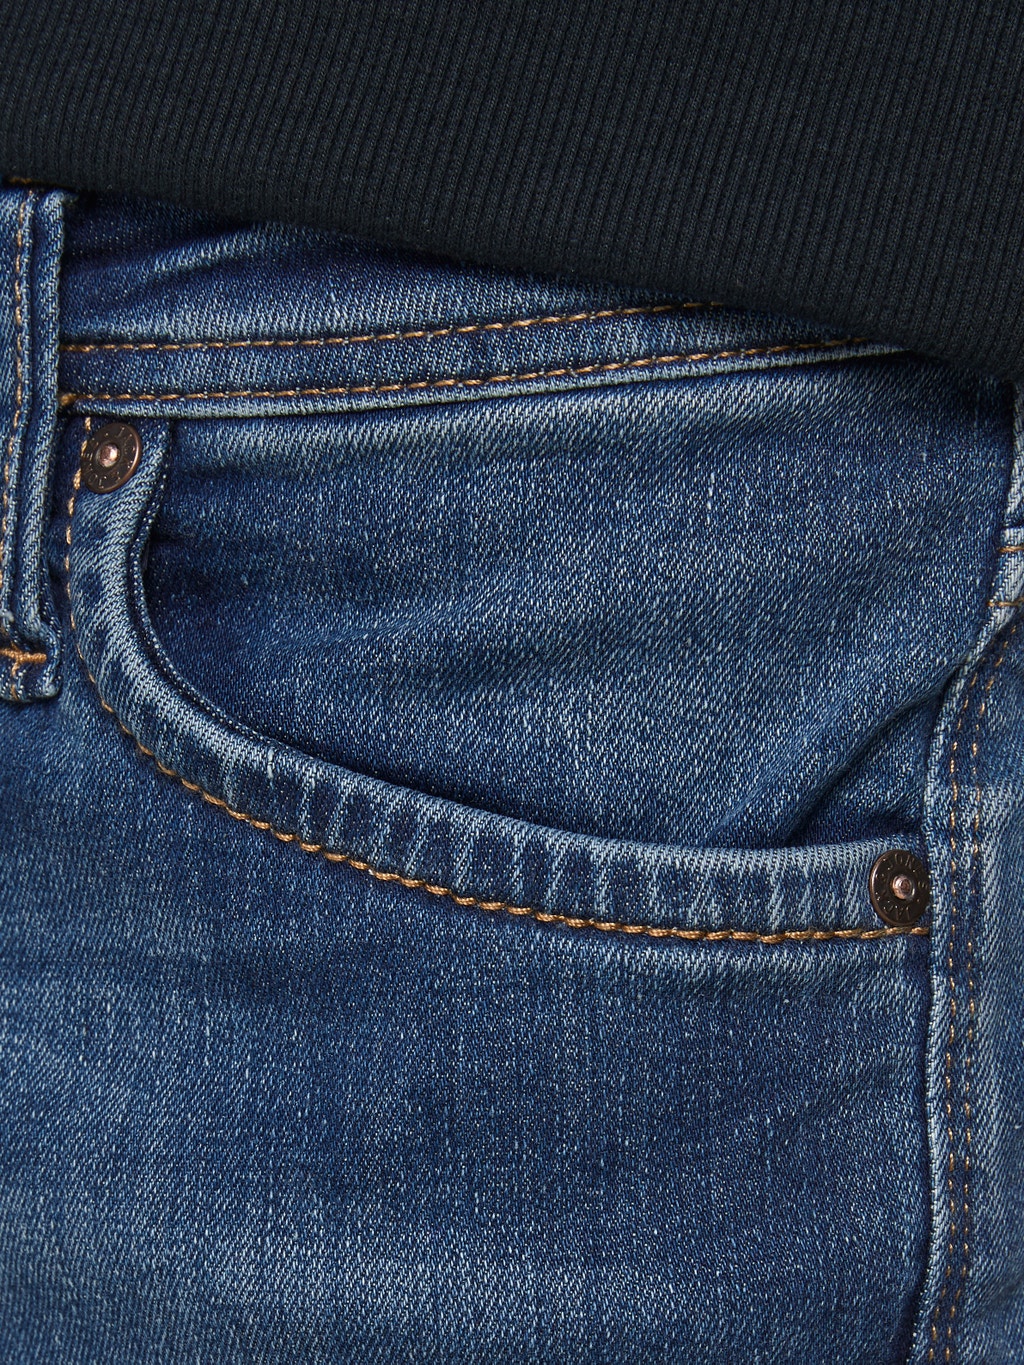 huiselijk conservatief Sportman GLENN FELIX JOS 194 50SPS Slim fit jeans met 20% korting! | Jack & Jones®